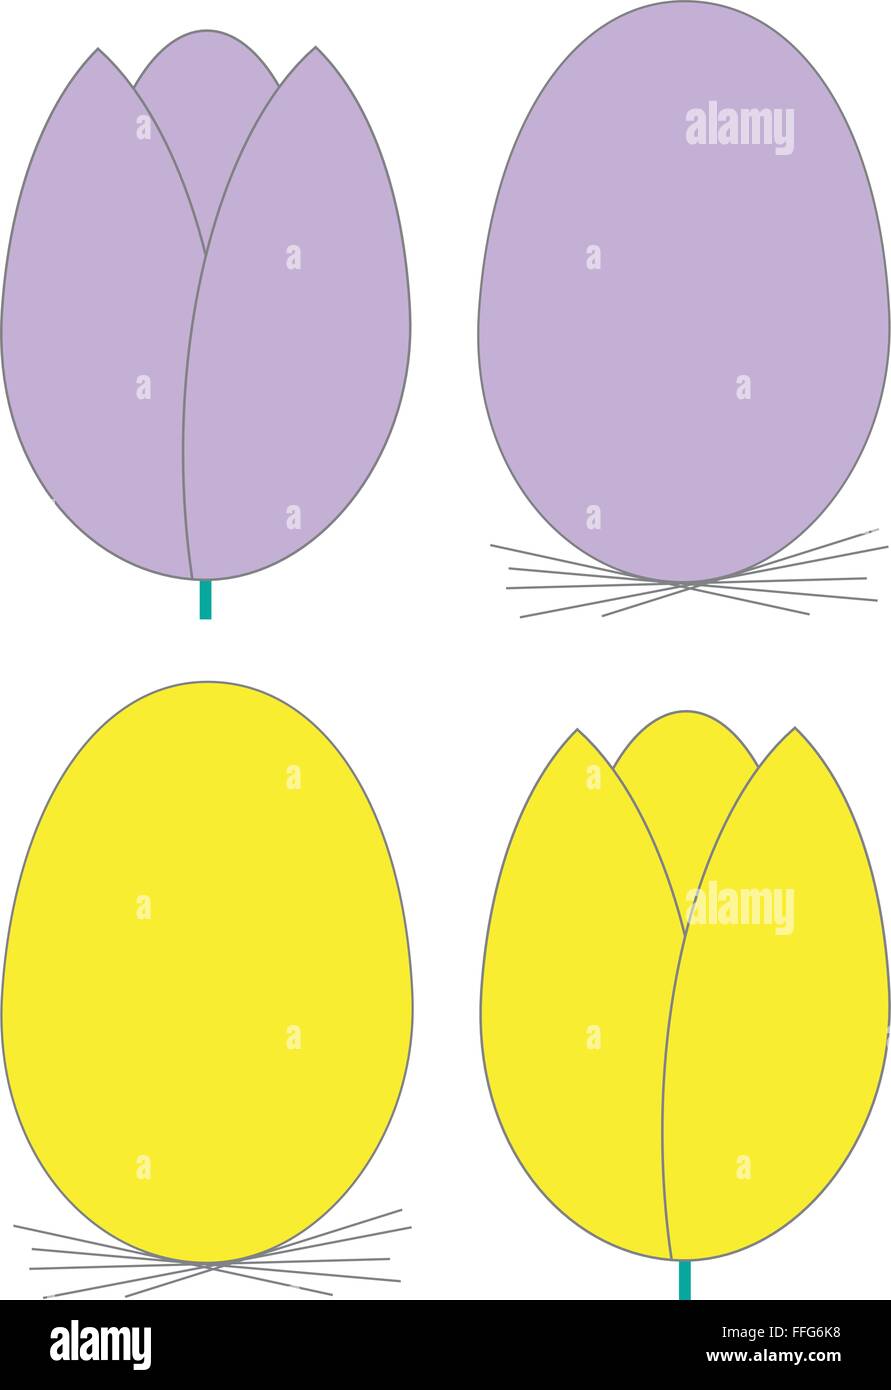 Vektor - Osterei (mit Nest) und Tulpe, flach, teilen die gleiche Form, Größe und Farben Stock Vektor